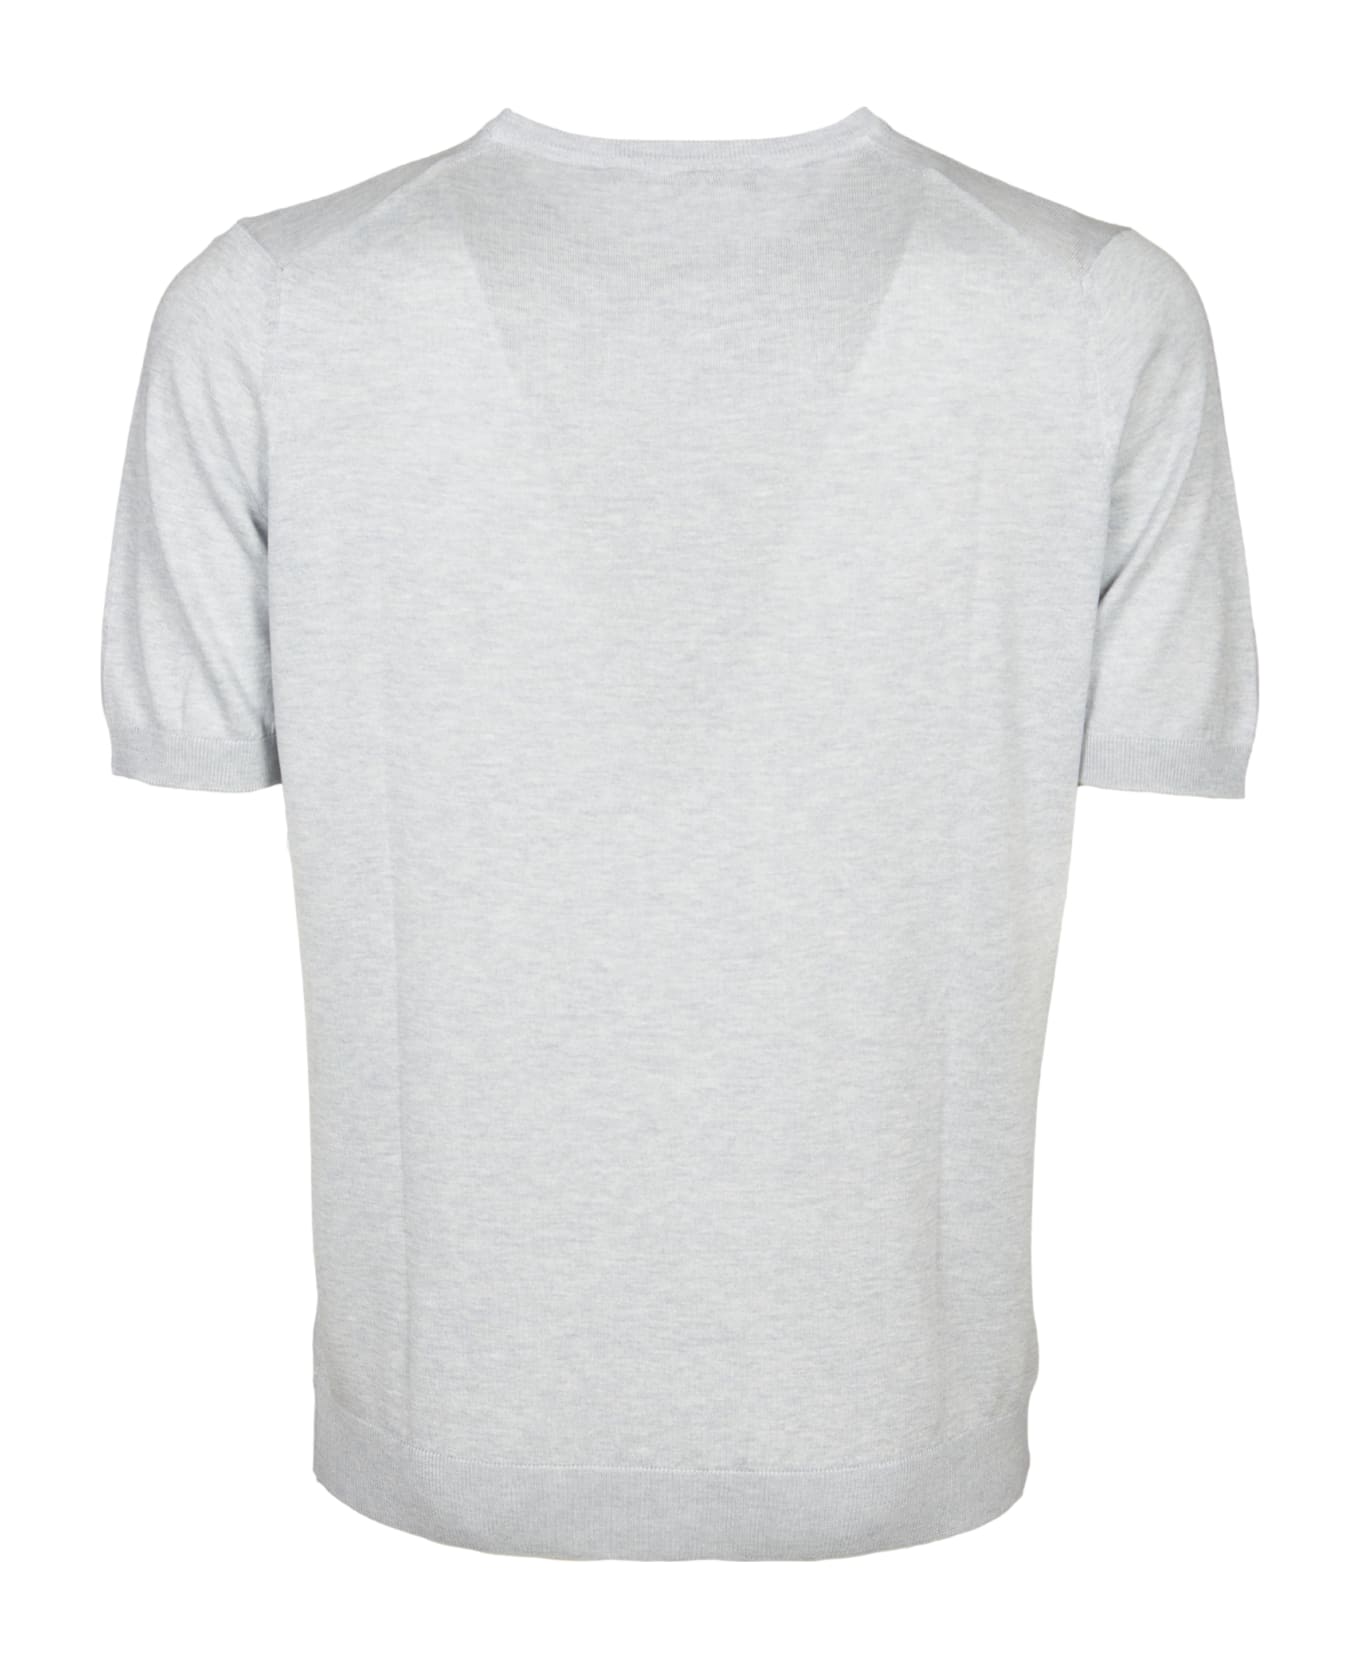 Tagliatore T-shirt - Grey